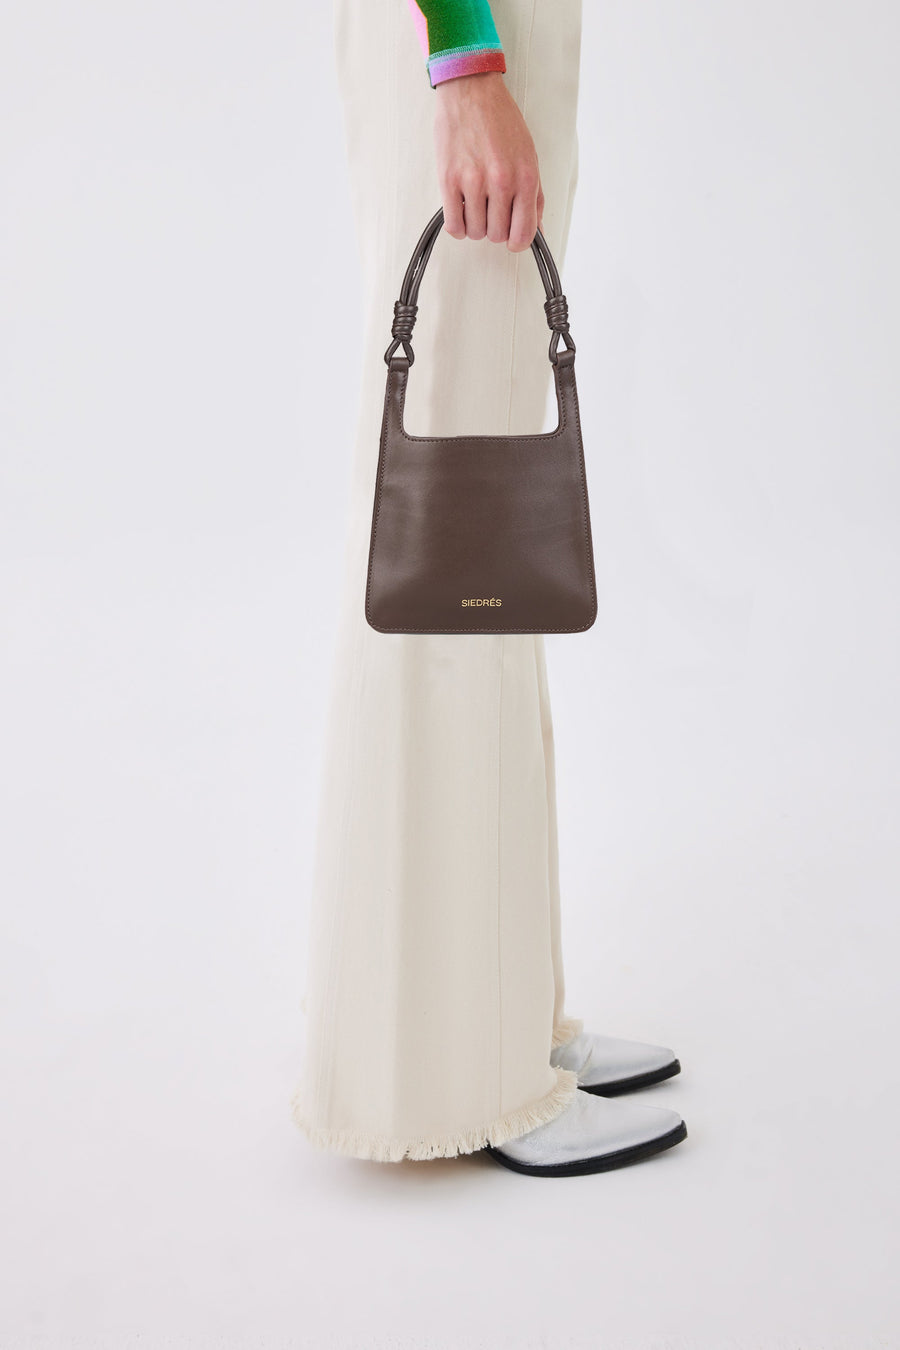 MINI GALLI - Super mini shoulder bag